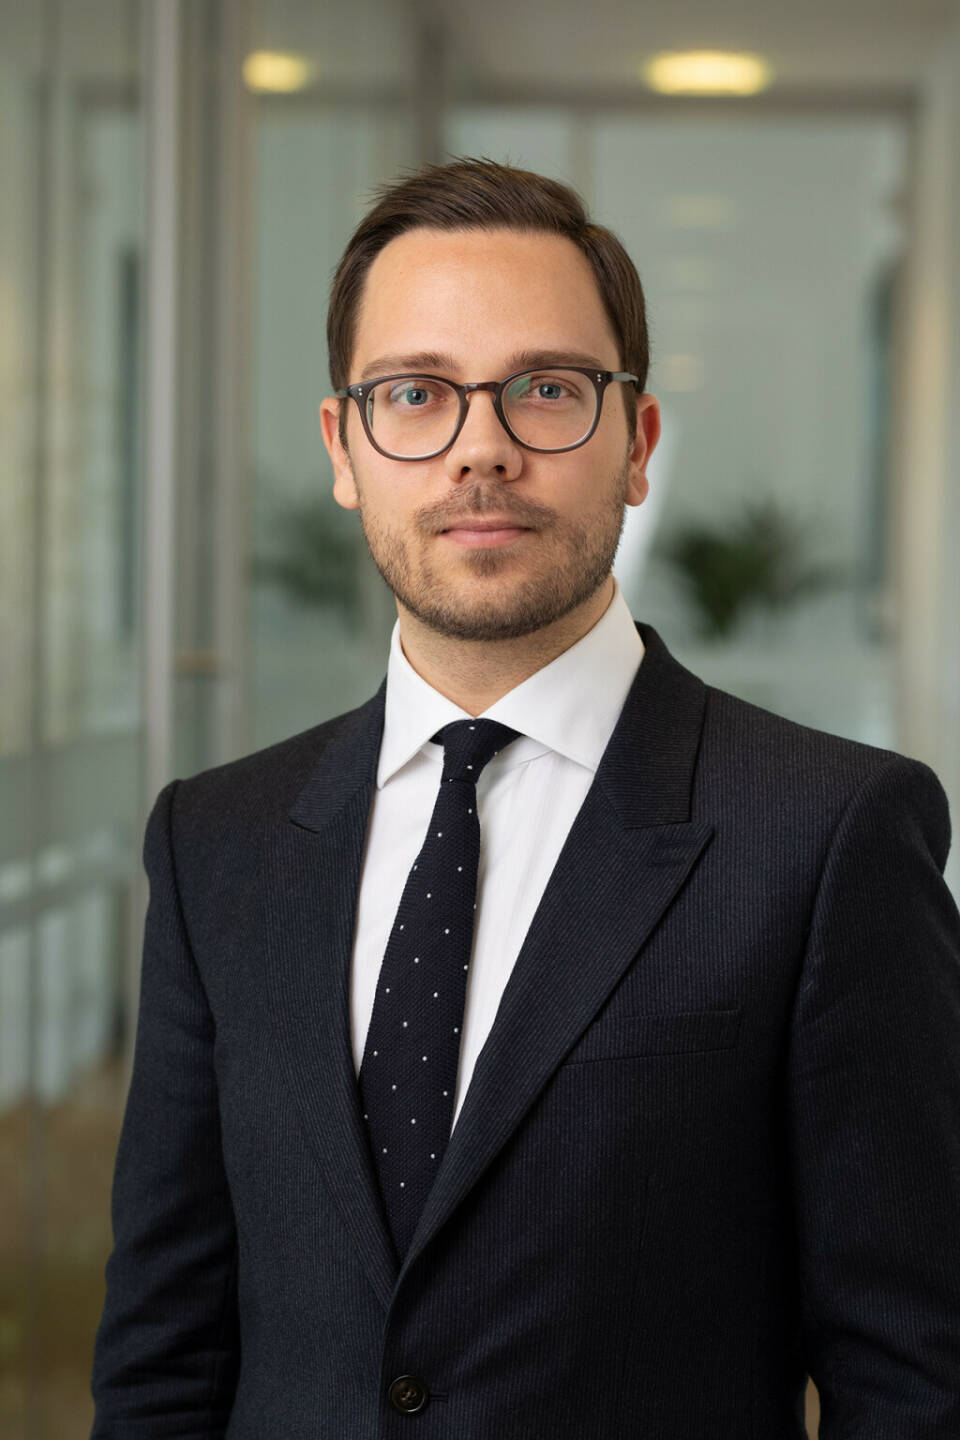 Dominik Brunner ist neuer Rechtsanwalt bei der Linzer Wirtschaftskanzlei Dumfarth Klausberger Rechtsanwälte, Credit: Dumfarth Klausberger Rechtsanwälte